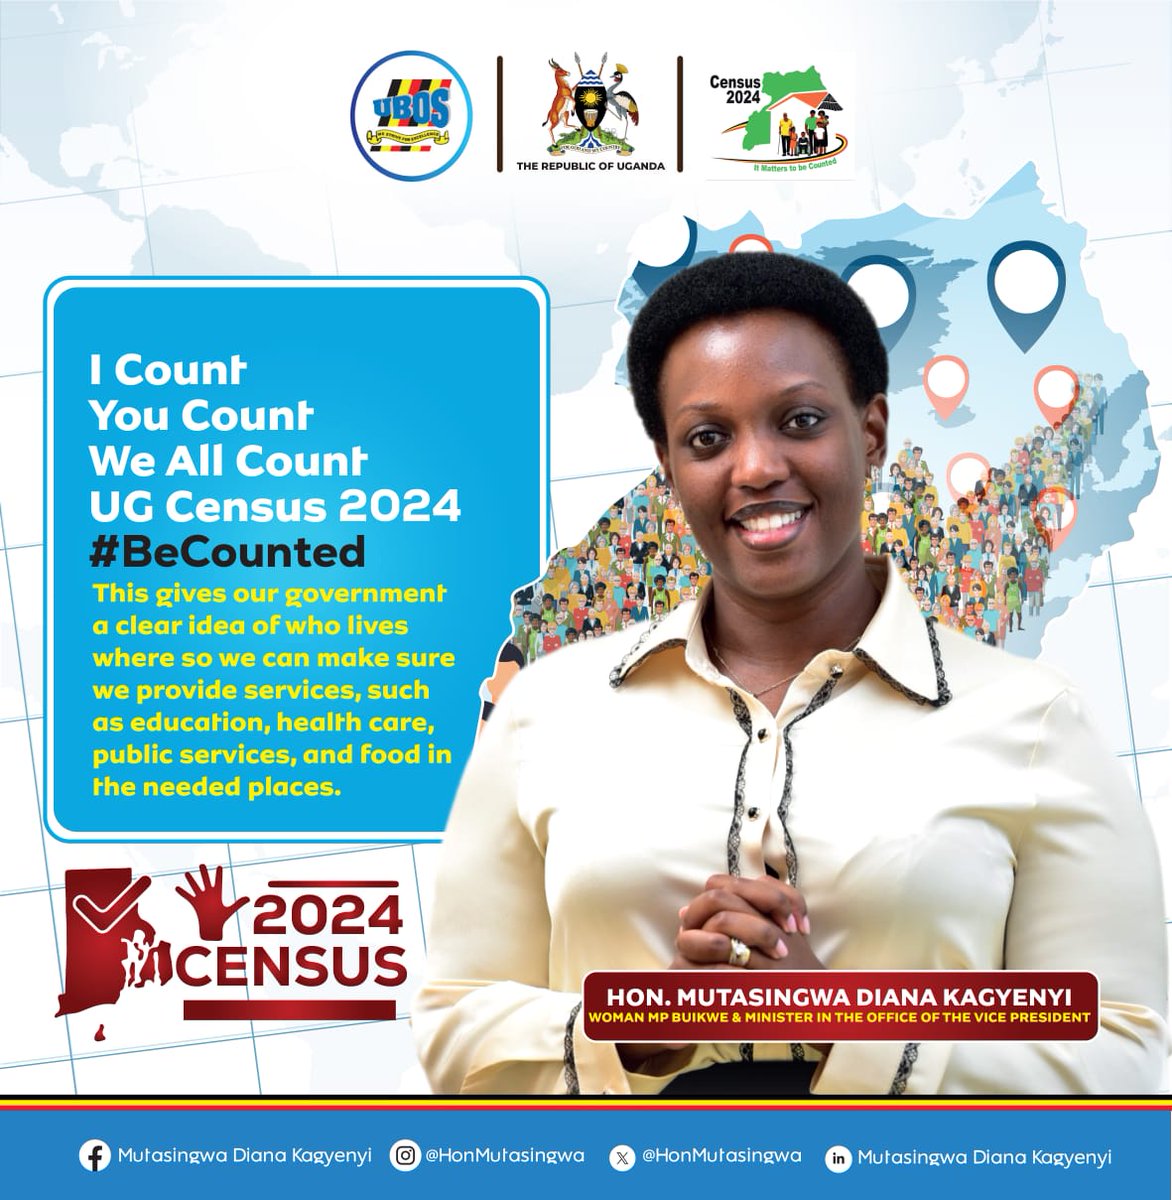 #BeCounted
#CensusUG2024 
#UgMoving4wd
@StatisticsUg 
@GovUganda 
@HonMutasingwa